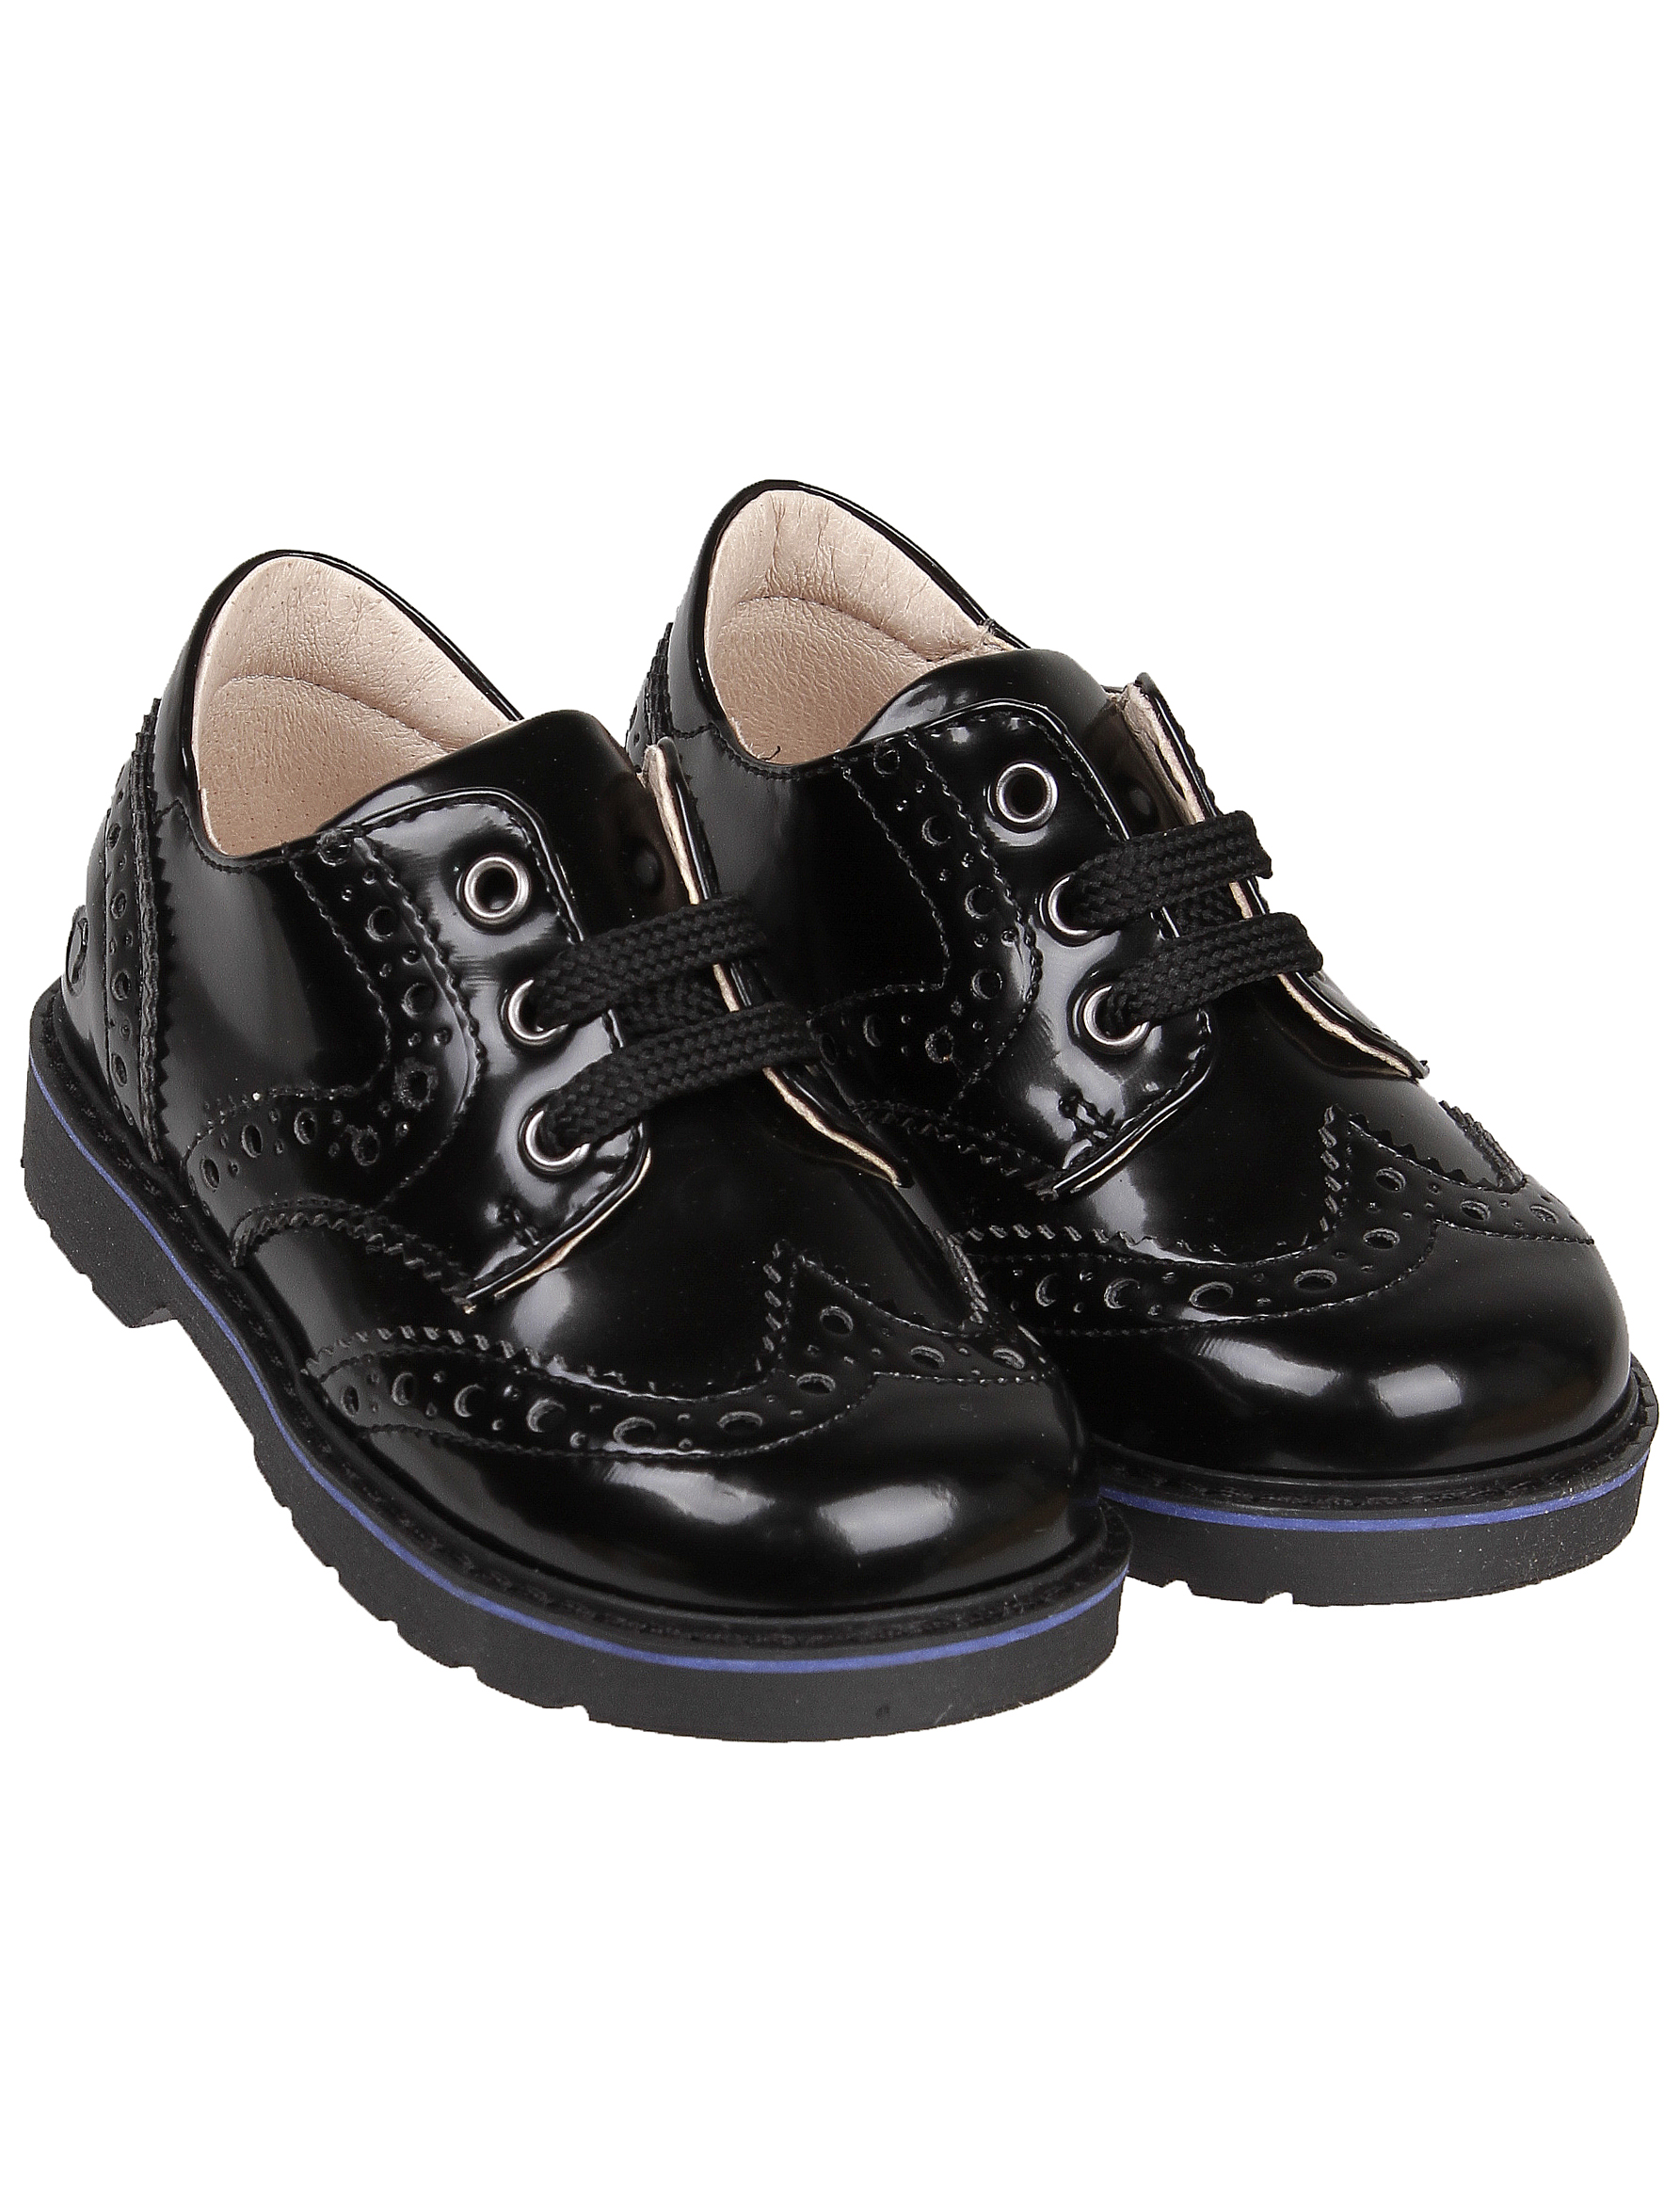 Ботинки Walkey черного цвета